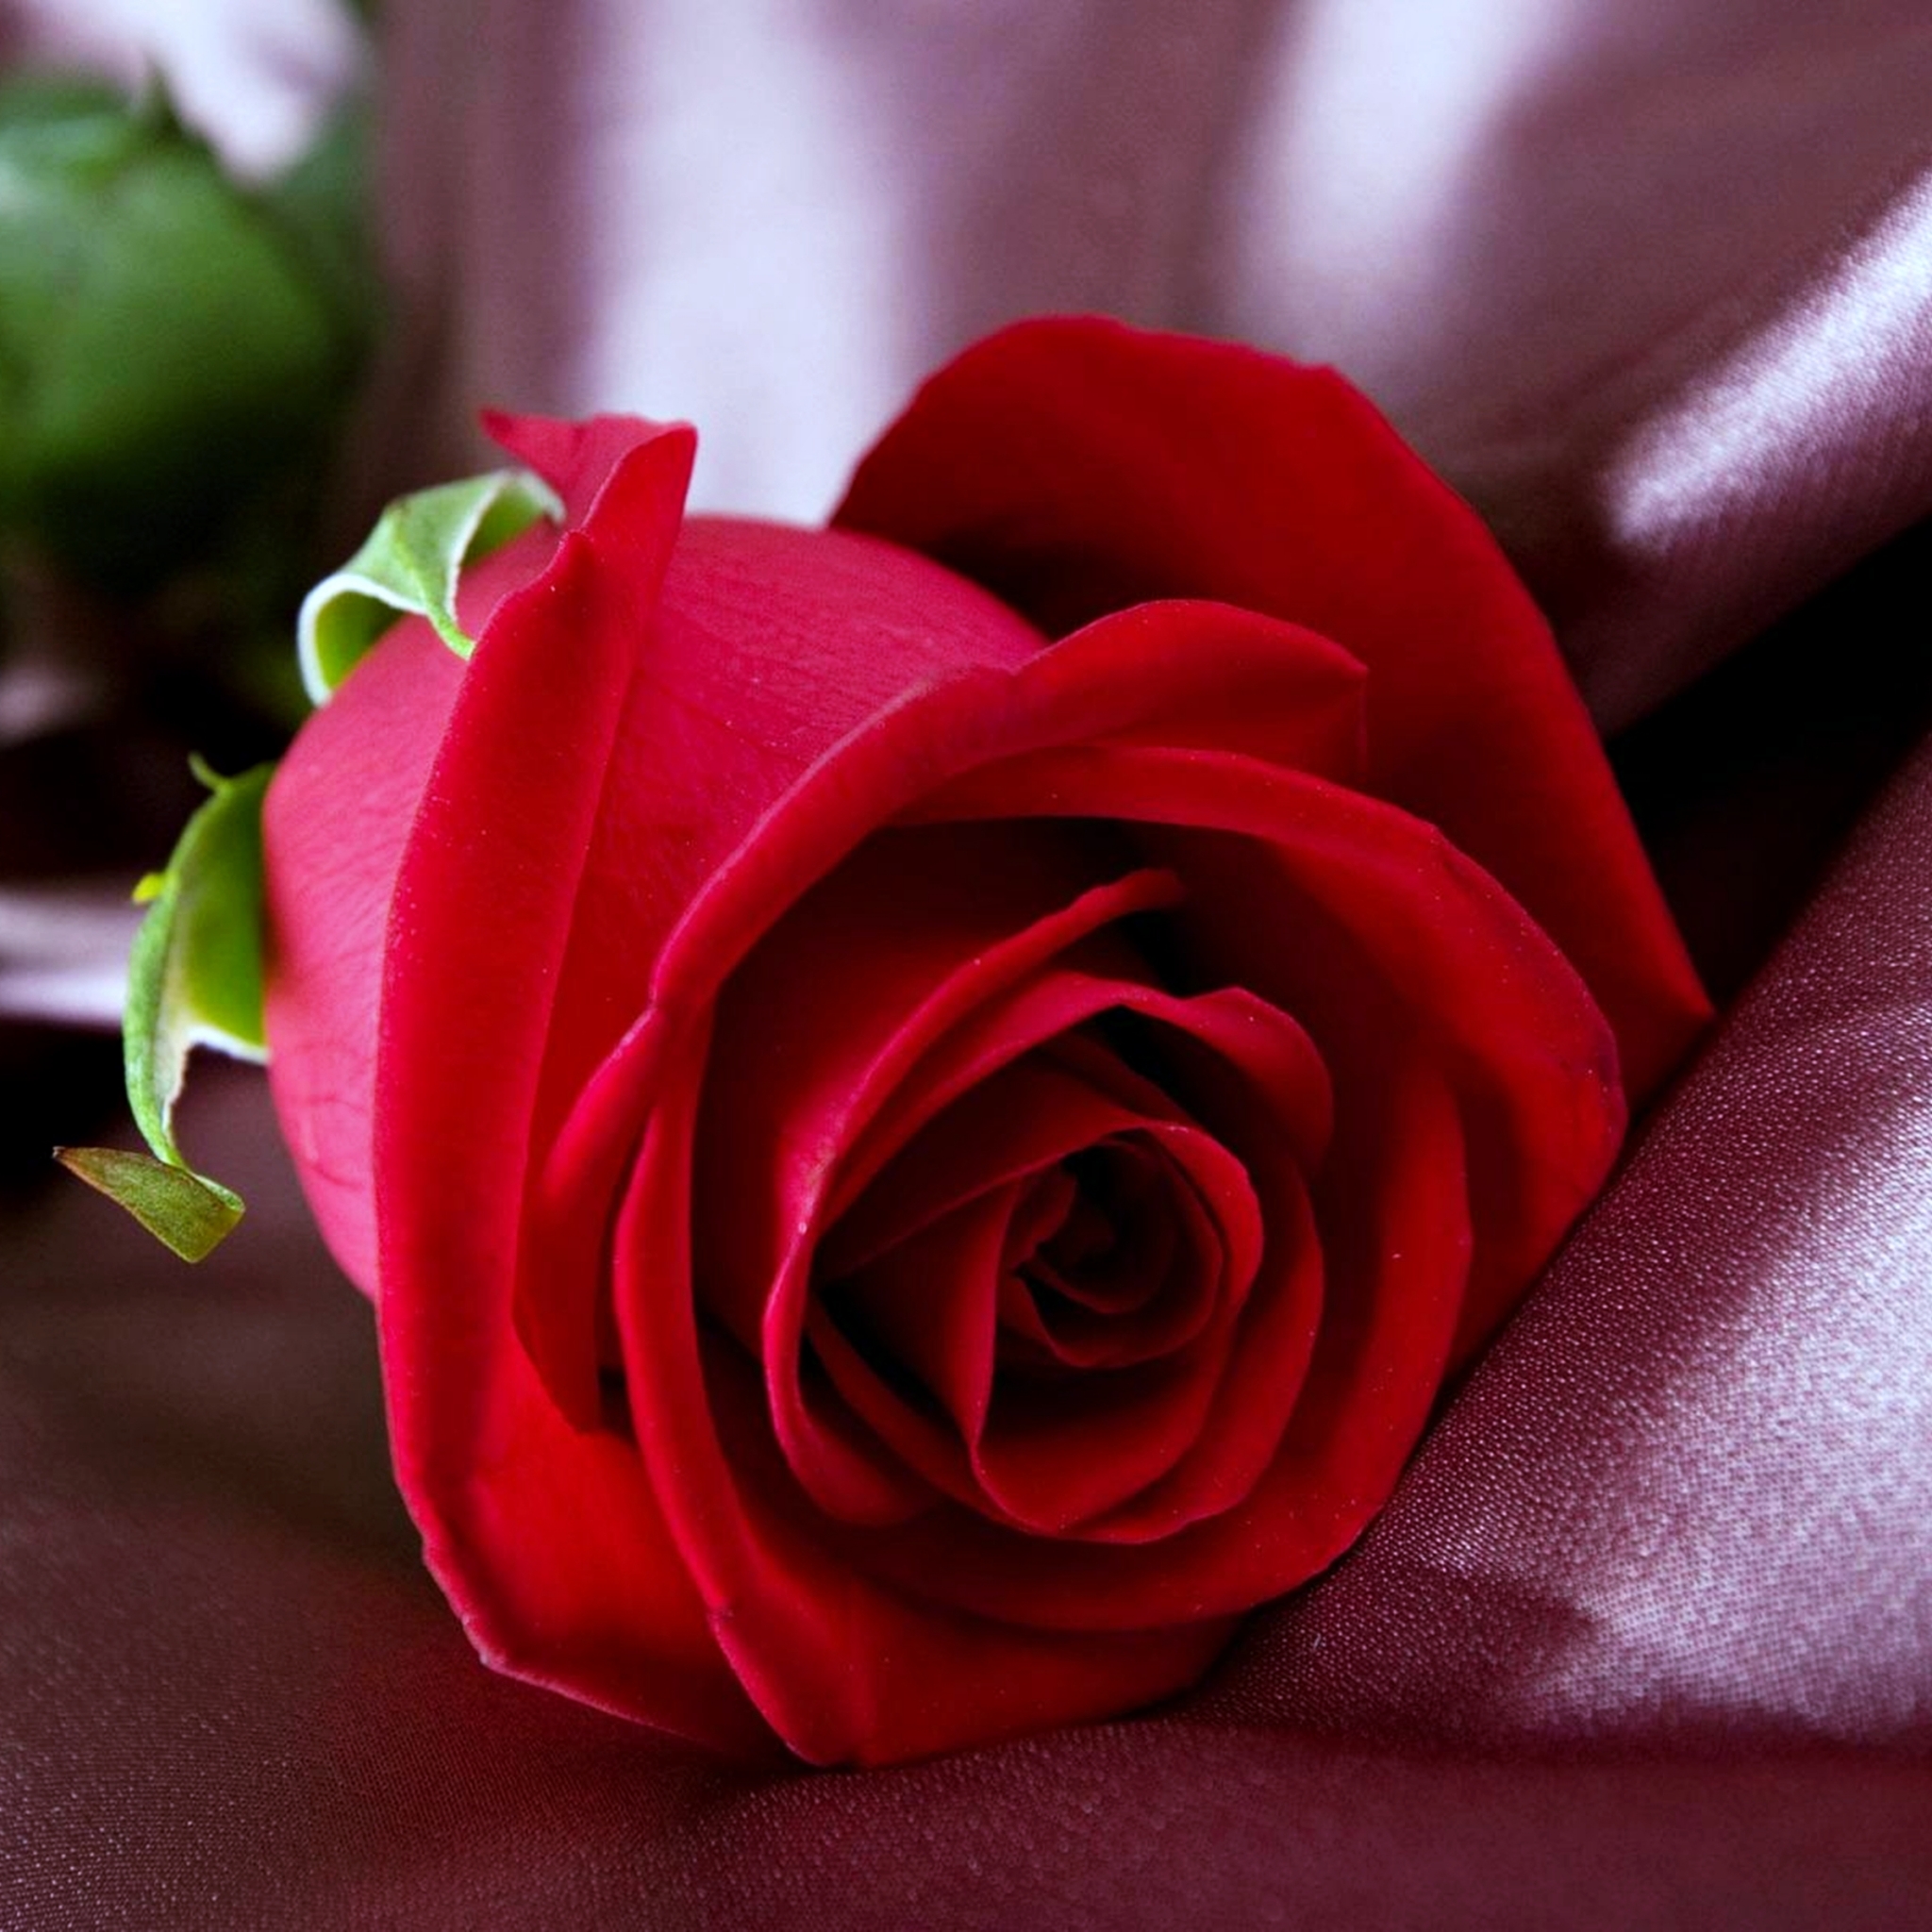 Скачать обои бесплатно Цветок, Роза, Весна, Красная Роза, Красный Цветок, Земля/природа, Флауэрсы картинка на рабочий стол ПК